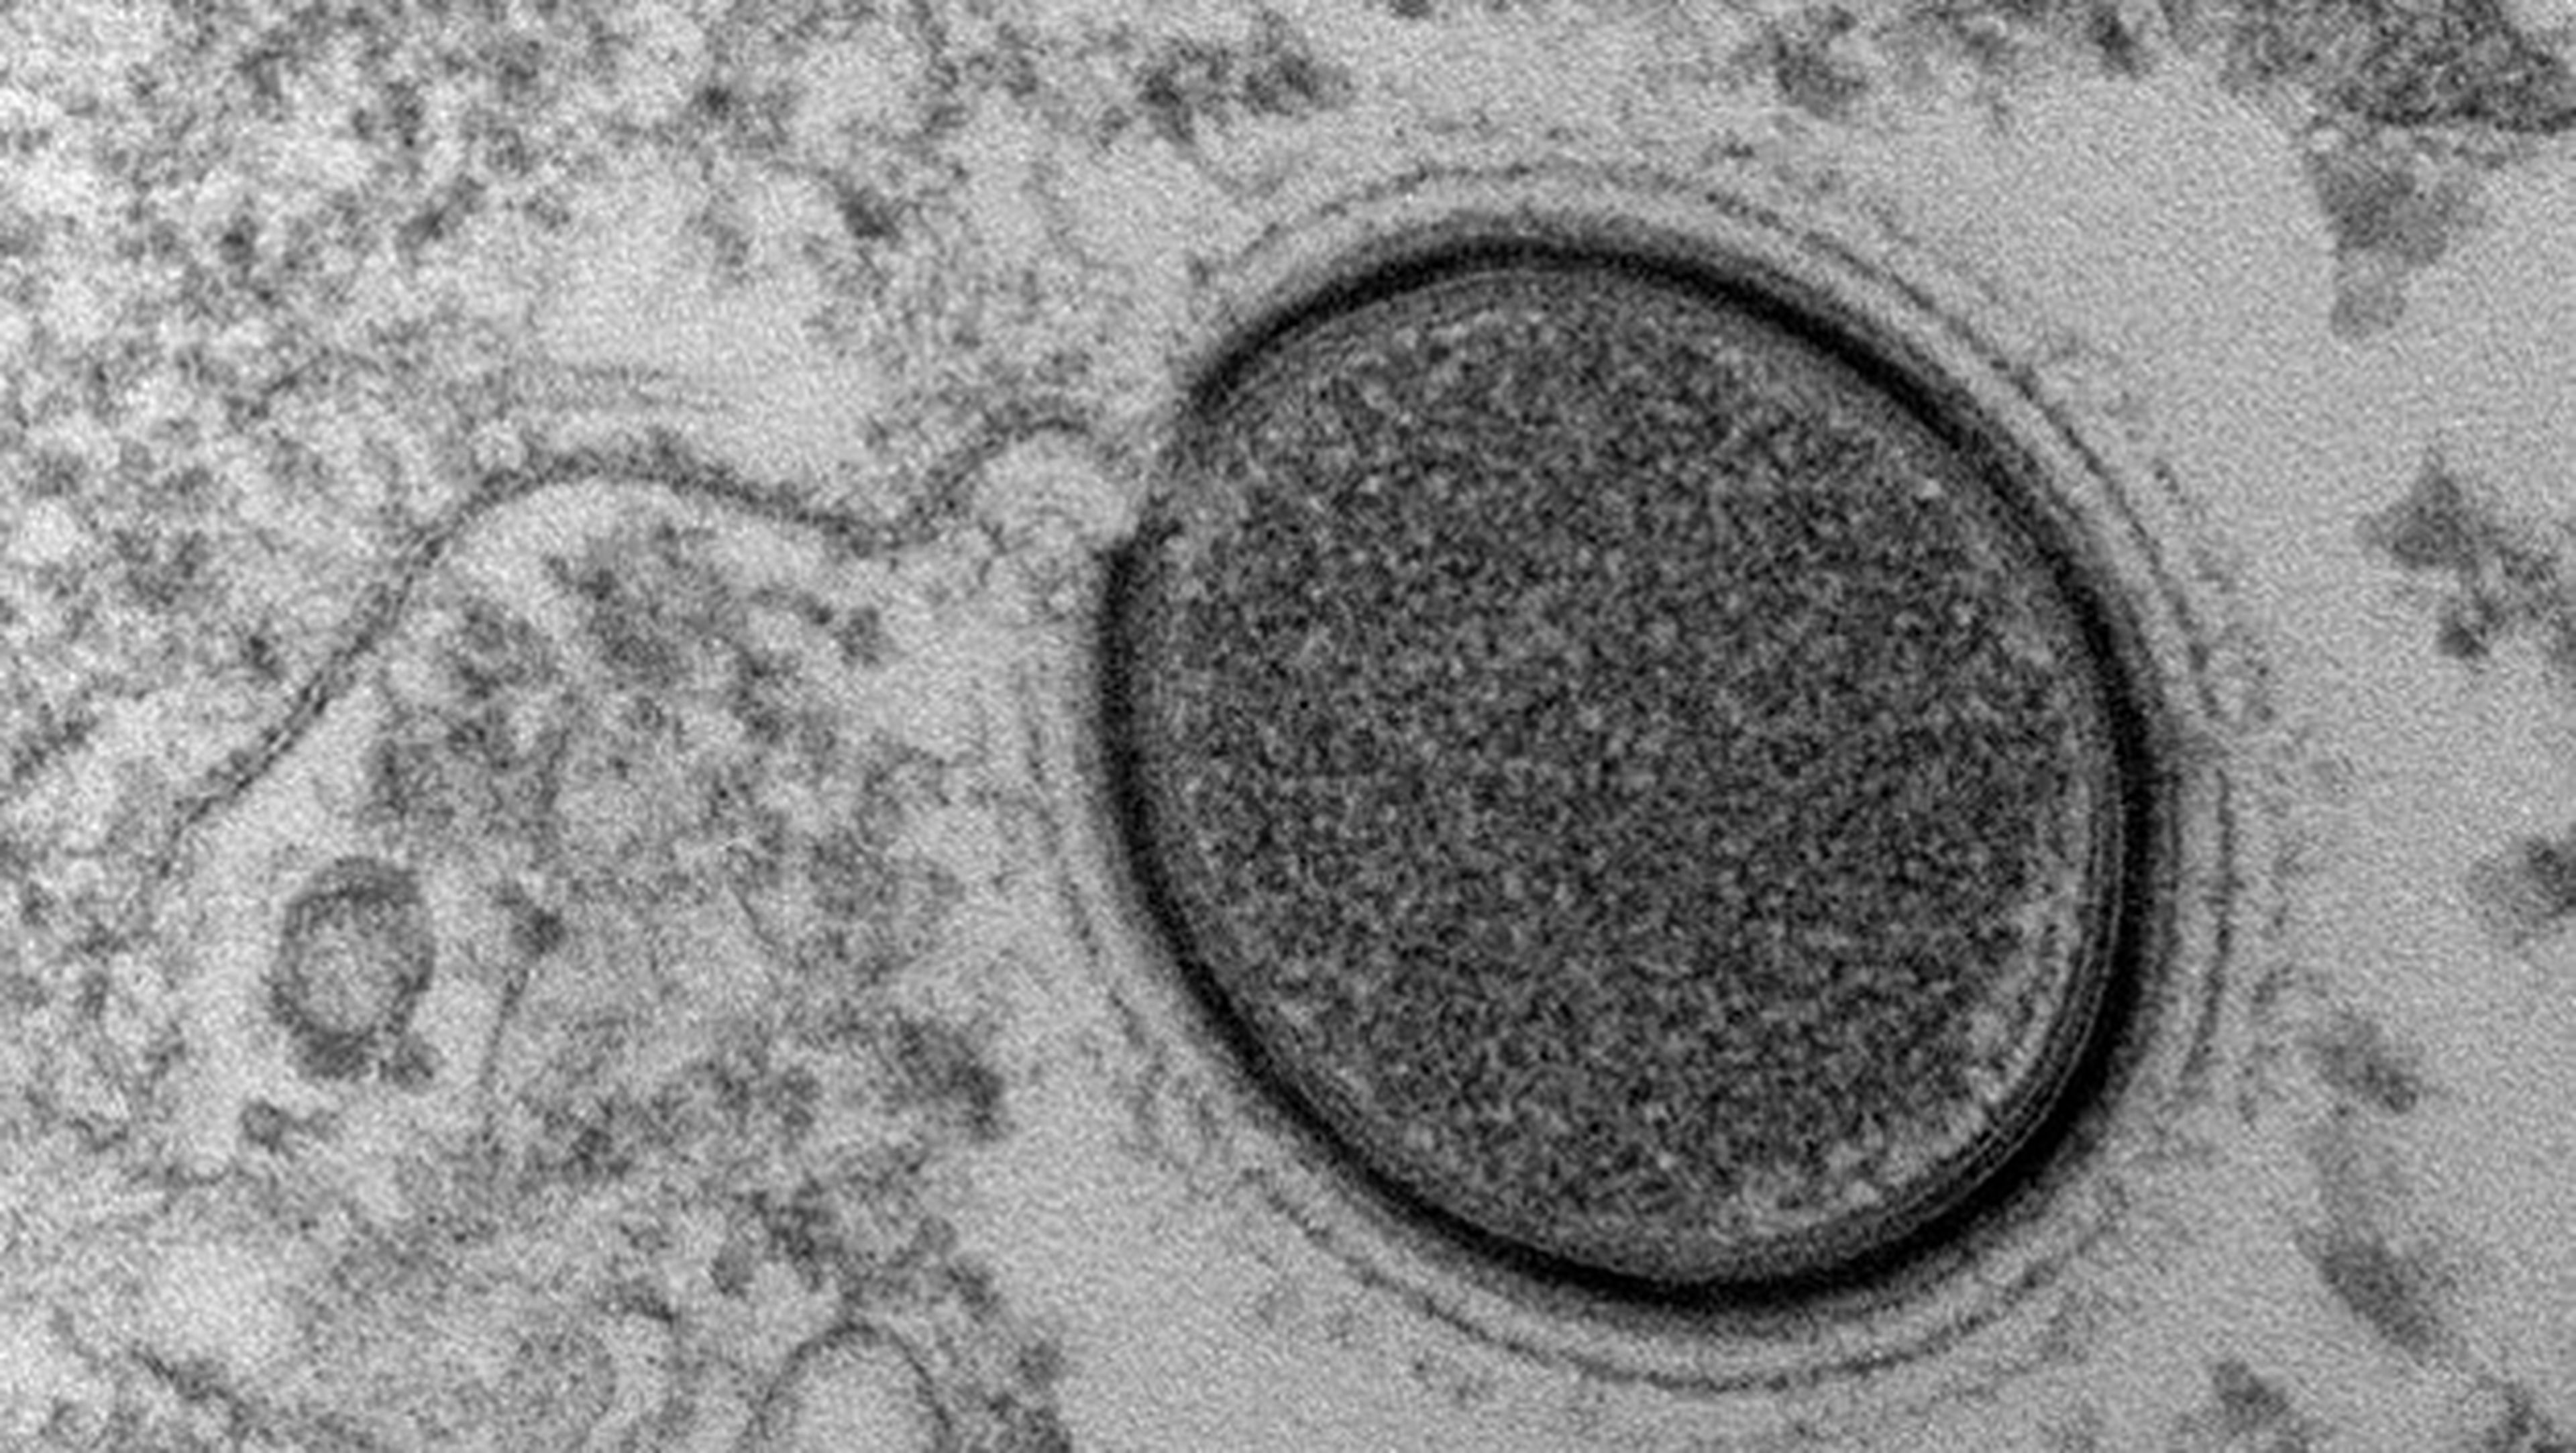 Científicos van a revivir un virus congelado durante 30.000 años